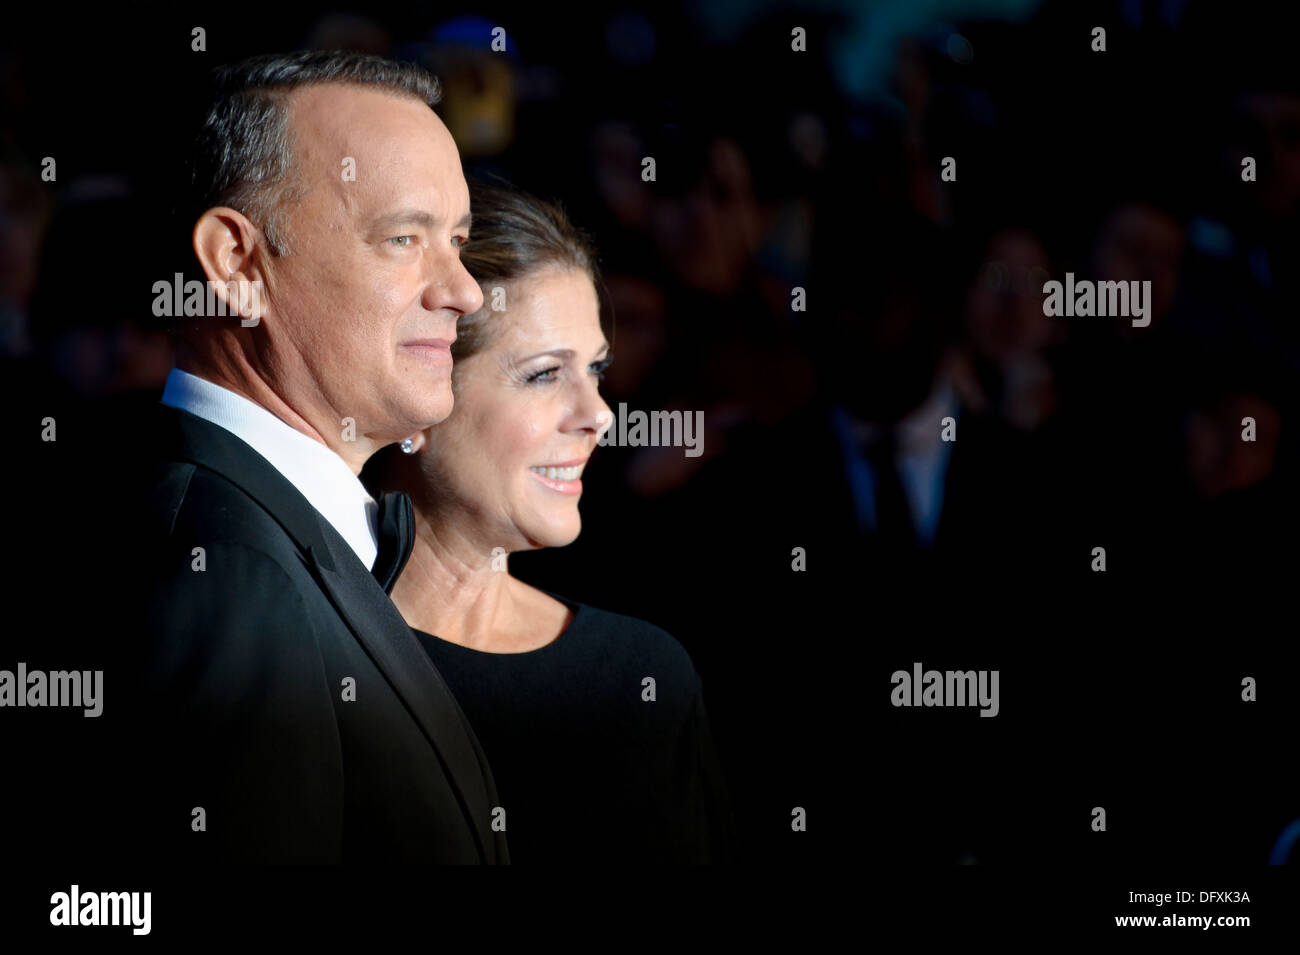 Les acteurs américains Tom Hanks et Rita Wilson arrivent pour le BFI London Film Festival première européenne du Capitaine Phillips. Banque D'Images